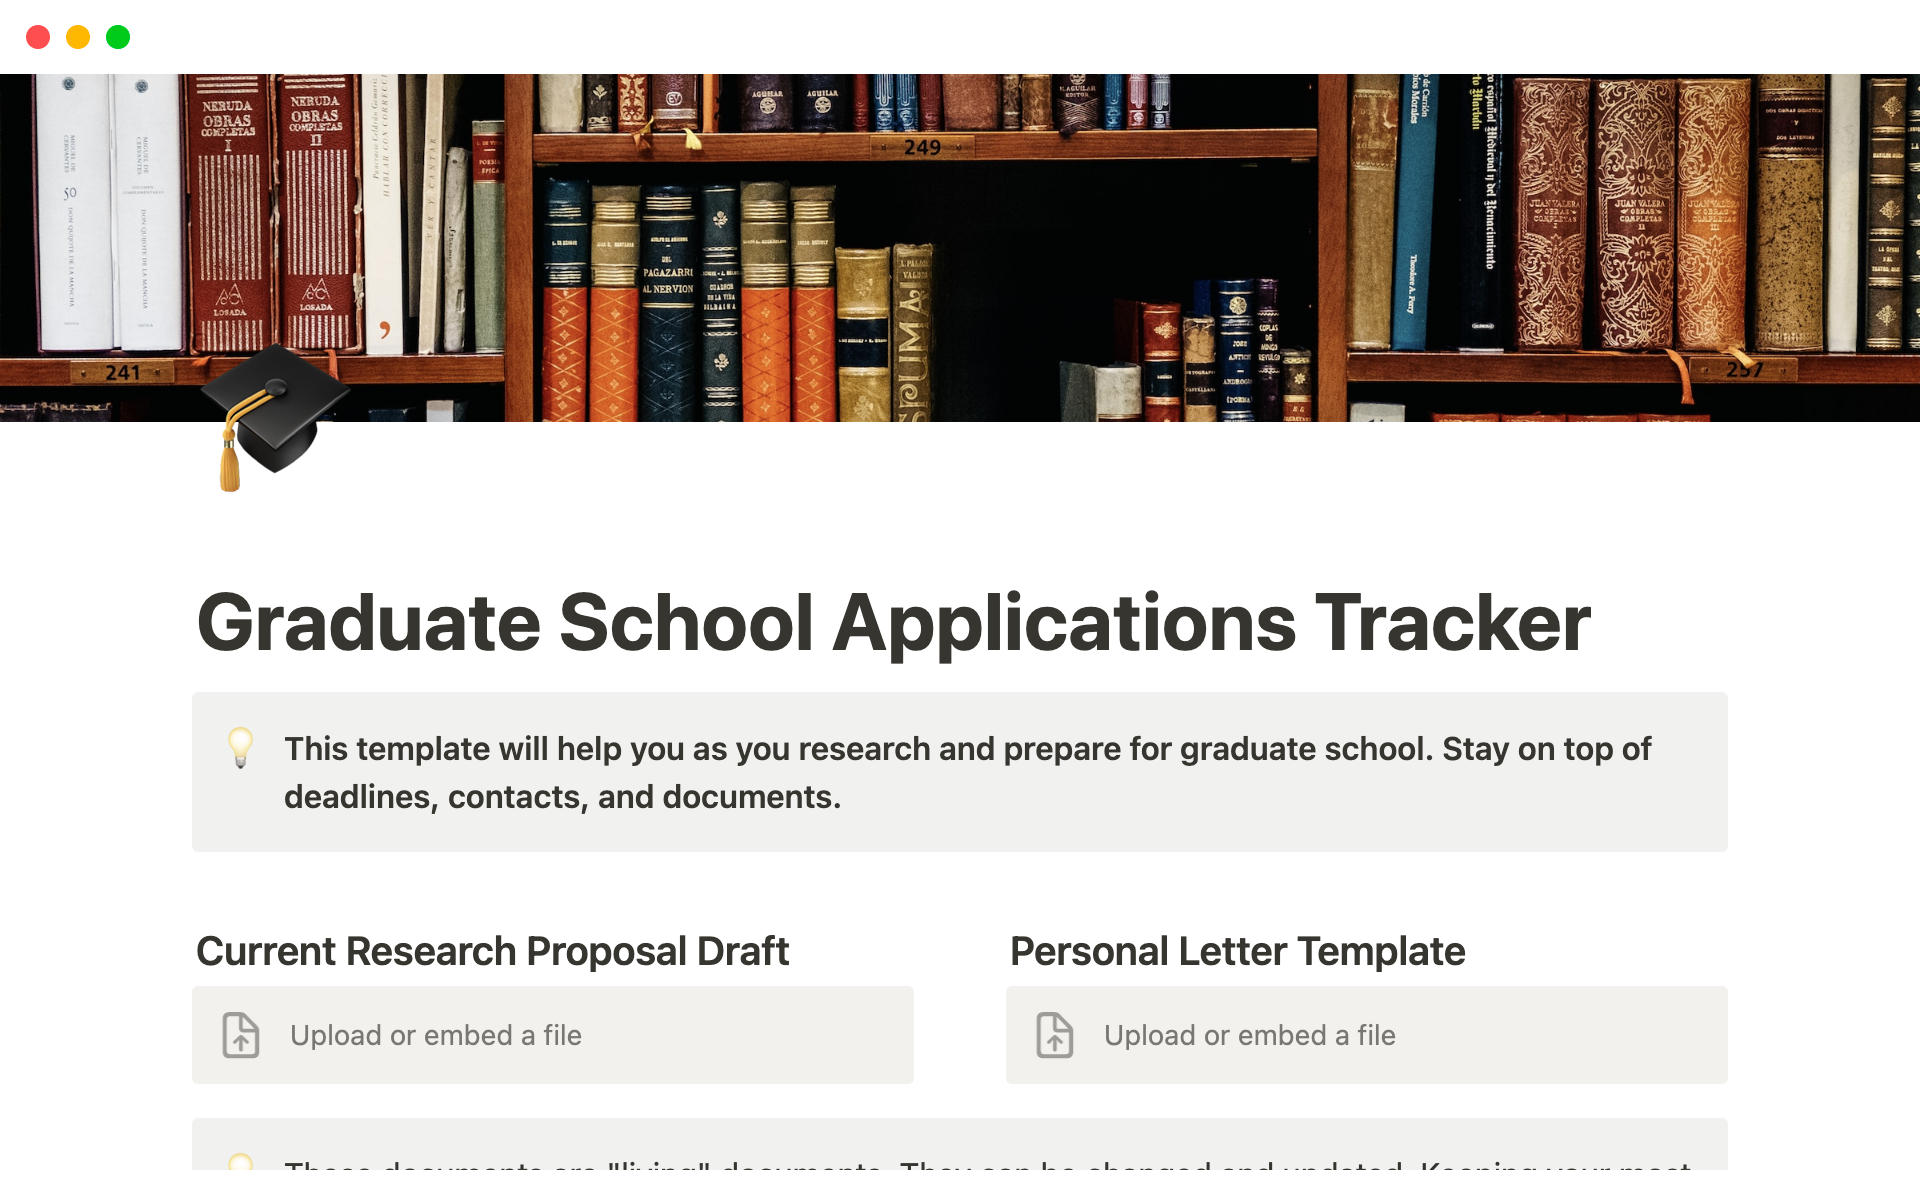 Vista previa de plantilla para Graduate School Applications Tracker